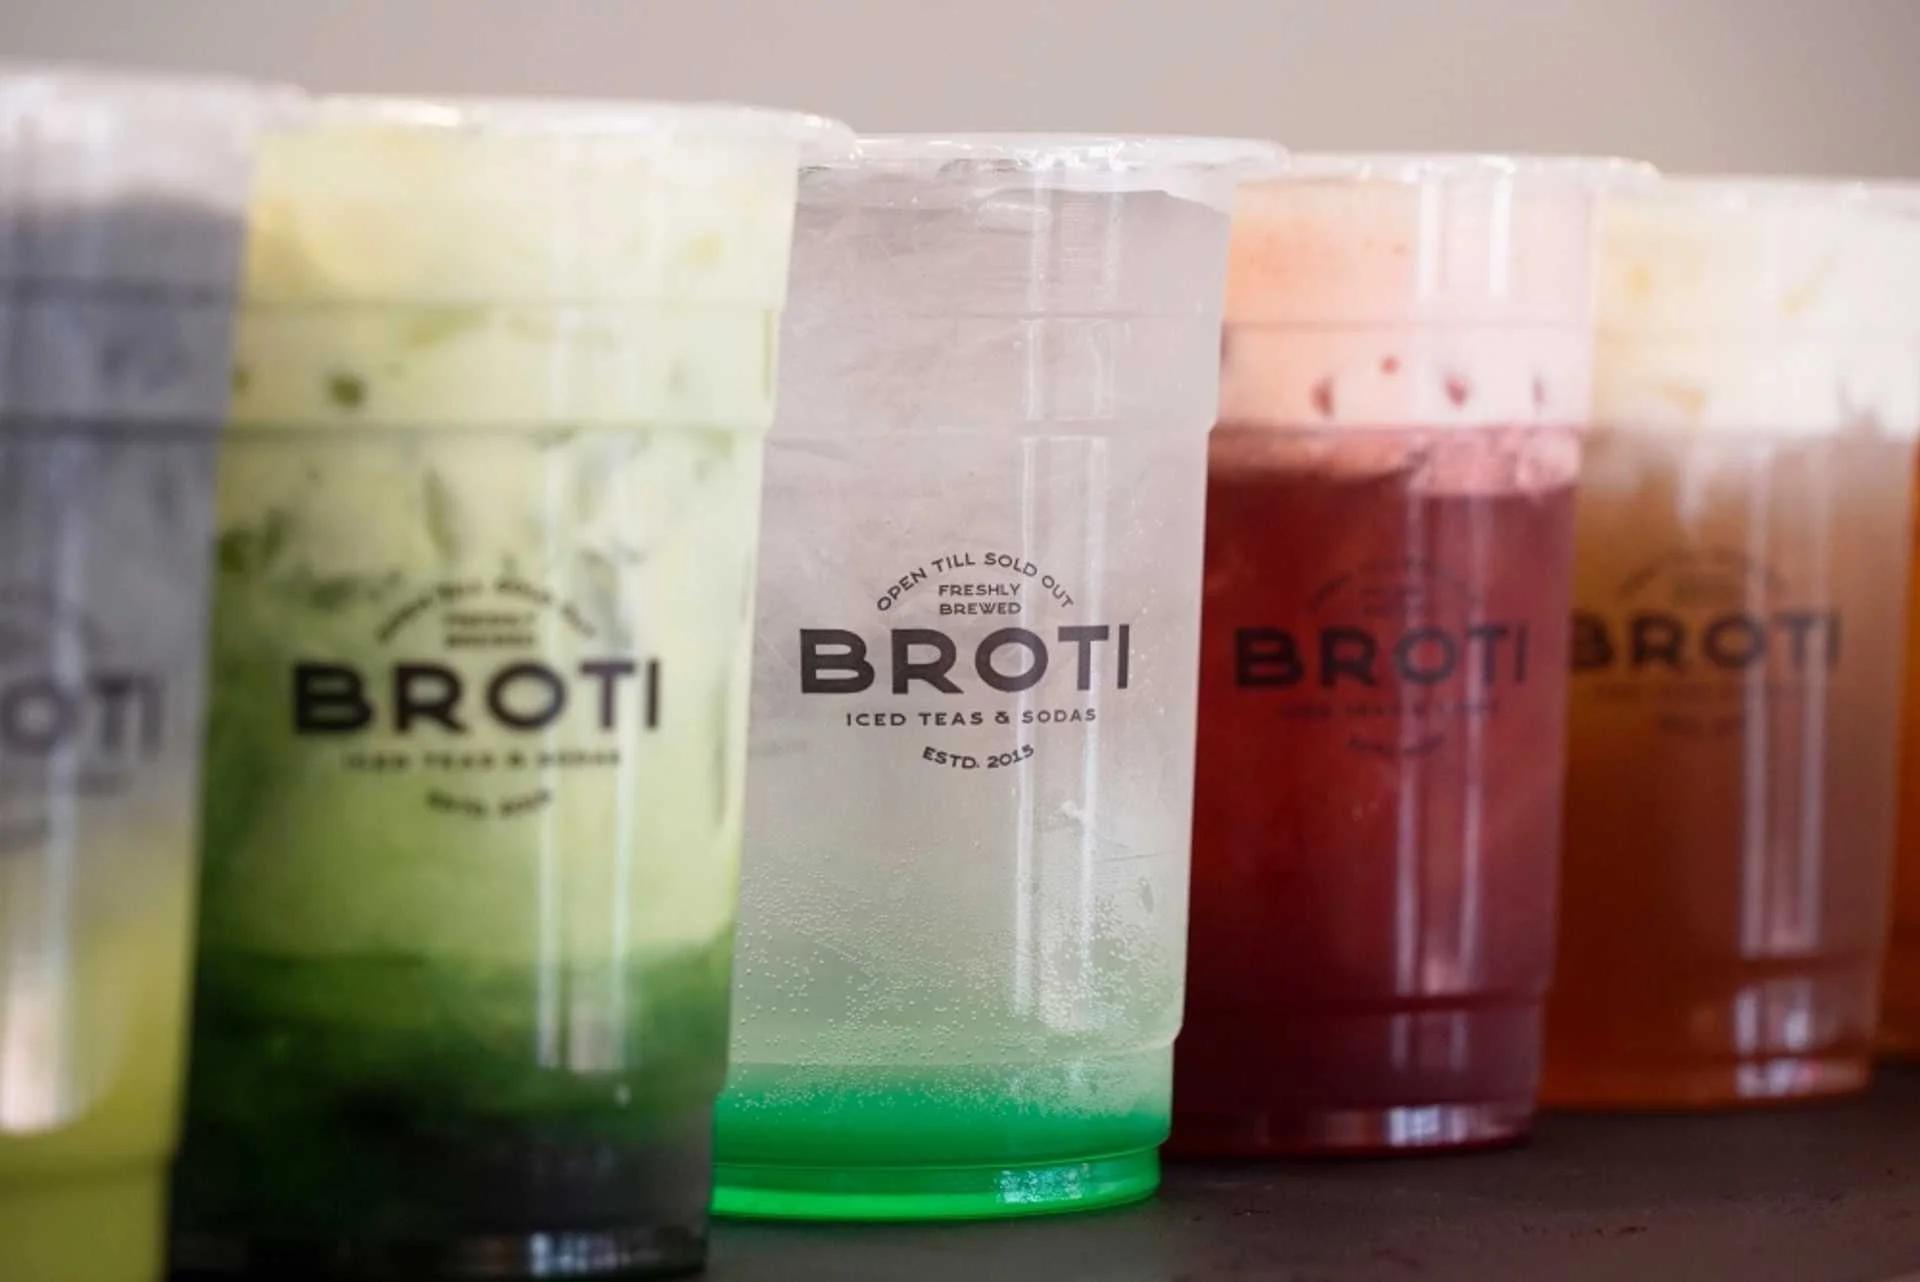 Broti drinks on display